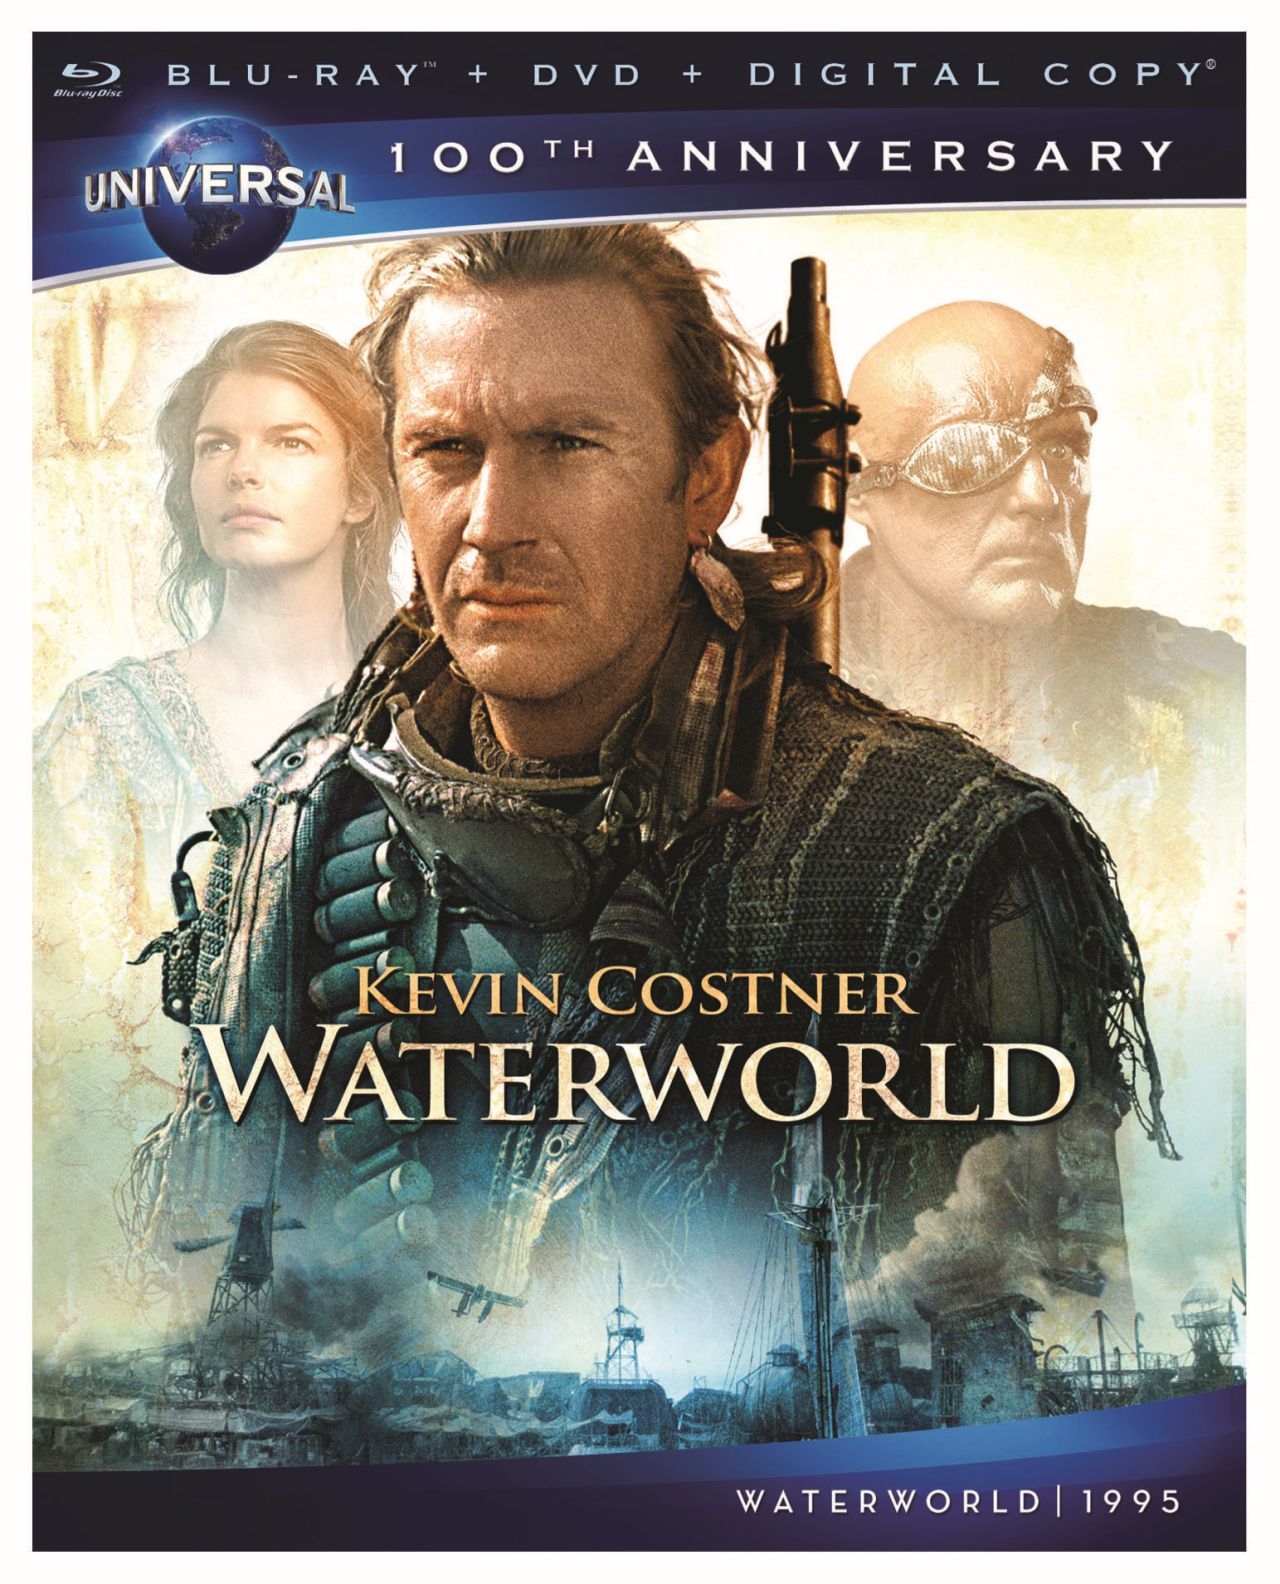 waterworld movie cast